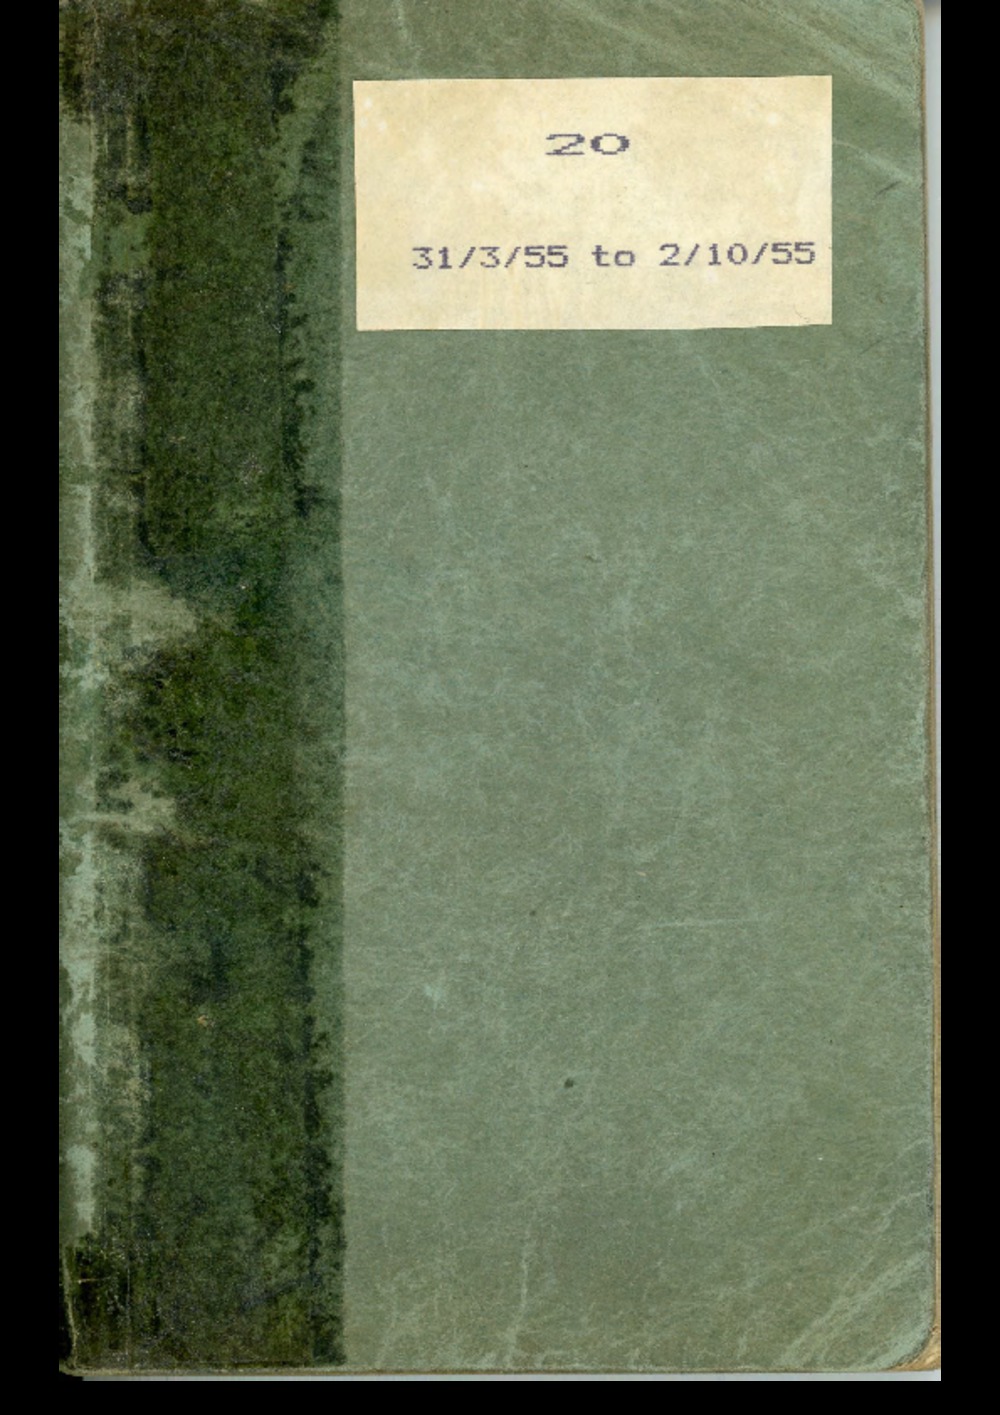 Article: Lenaerts Notebook 20 (31 Mar - 2 Oct 1955)